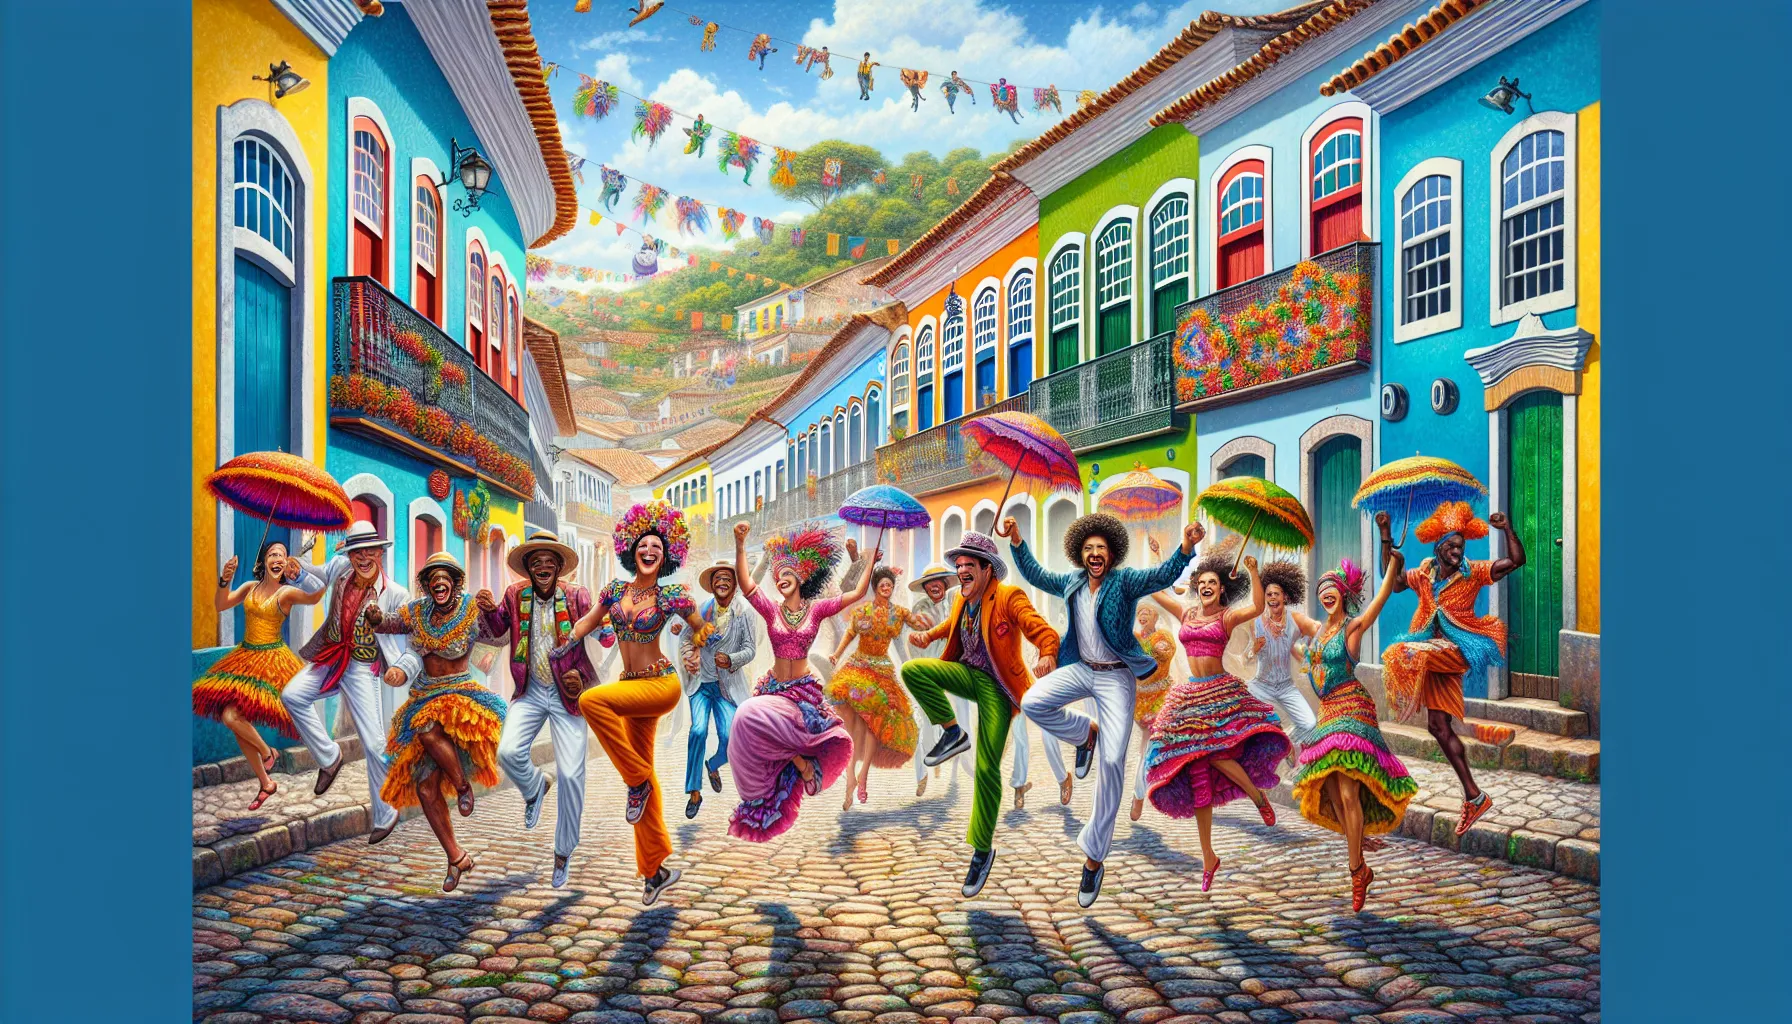 O frevo é um estilo musical e uma dança tradicional do carnaval de Pernambuco, especialmente da cidade de Recife. Ele surgiu no final do século XIX e é considerado um dos principais símbolos da cultura pernambucana.

A associação entre cultura e frevo é histórica e profunda. O frevo reflete a identidade e a diversidade cultural do povo pernambucano, sendo uma